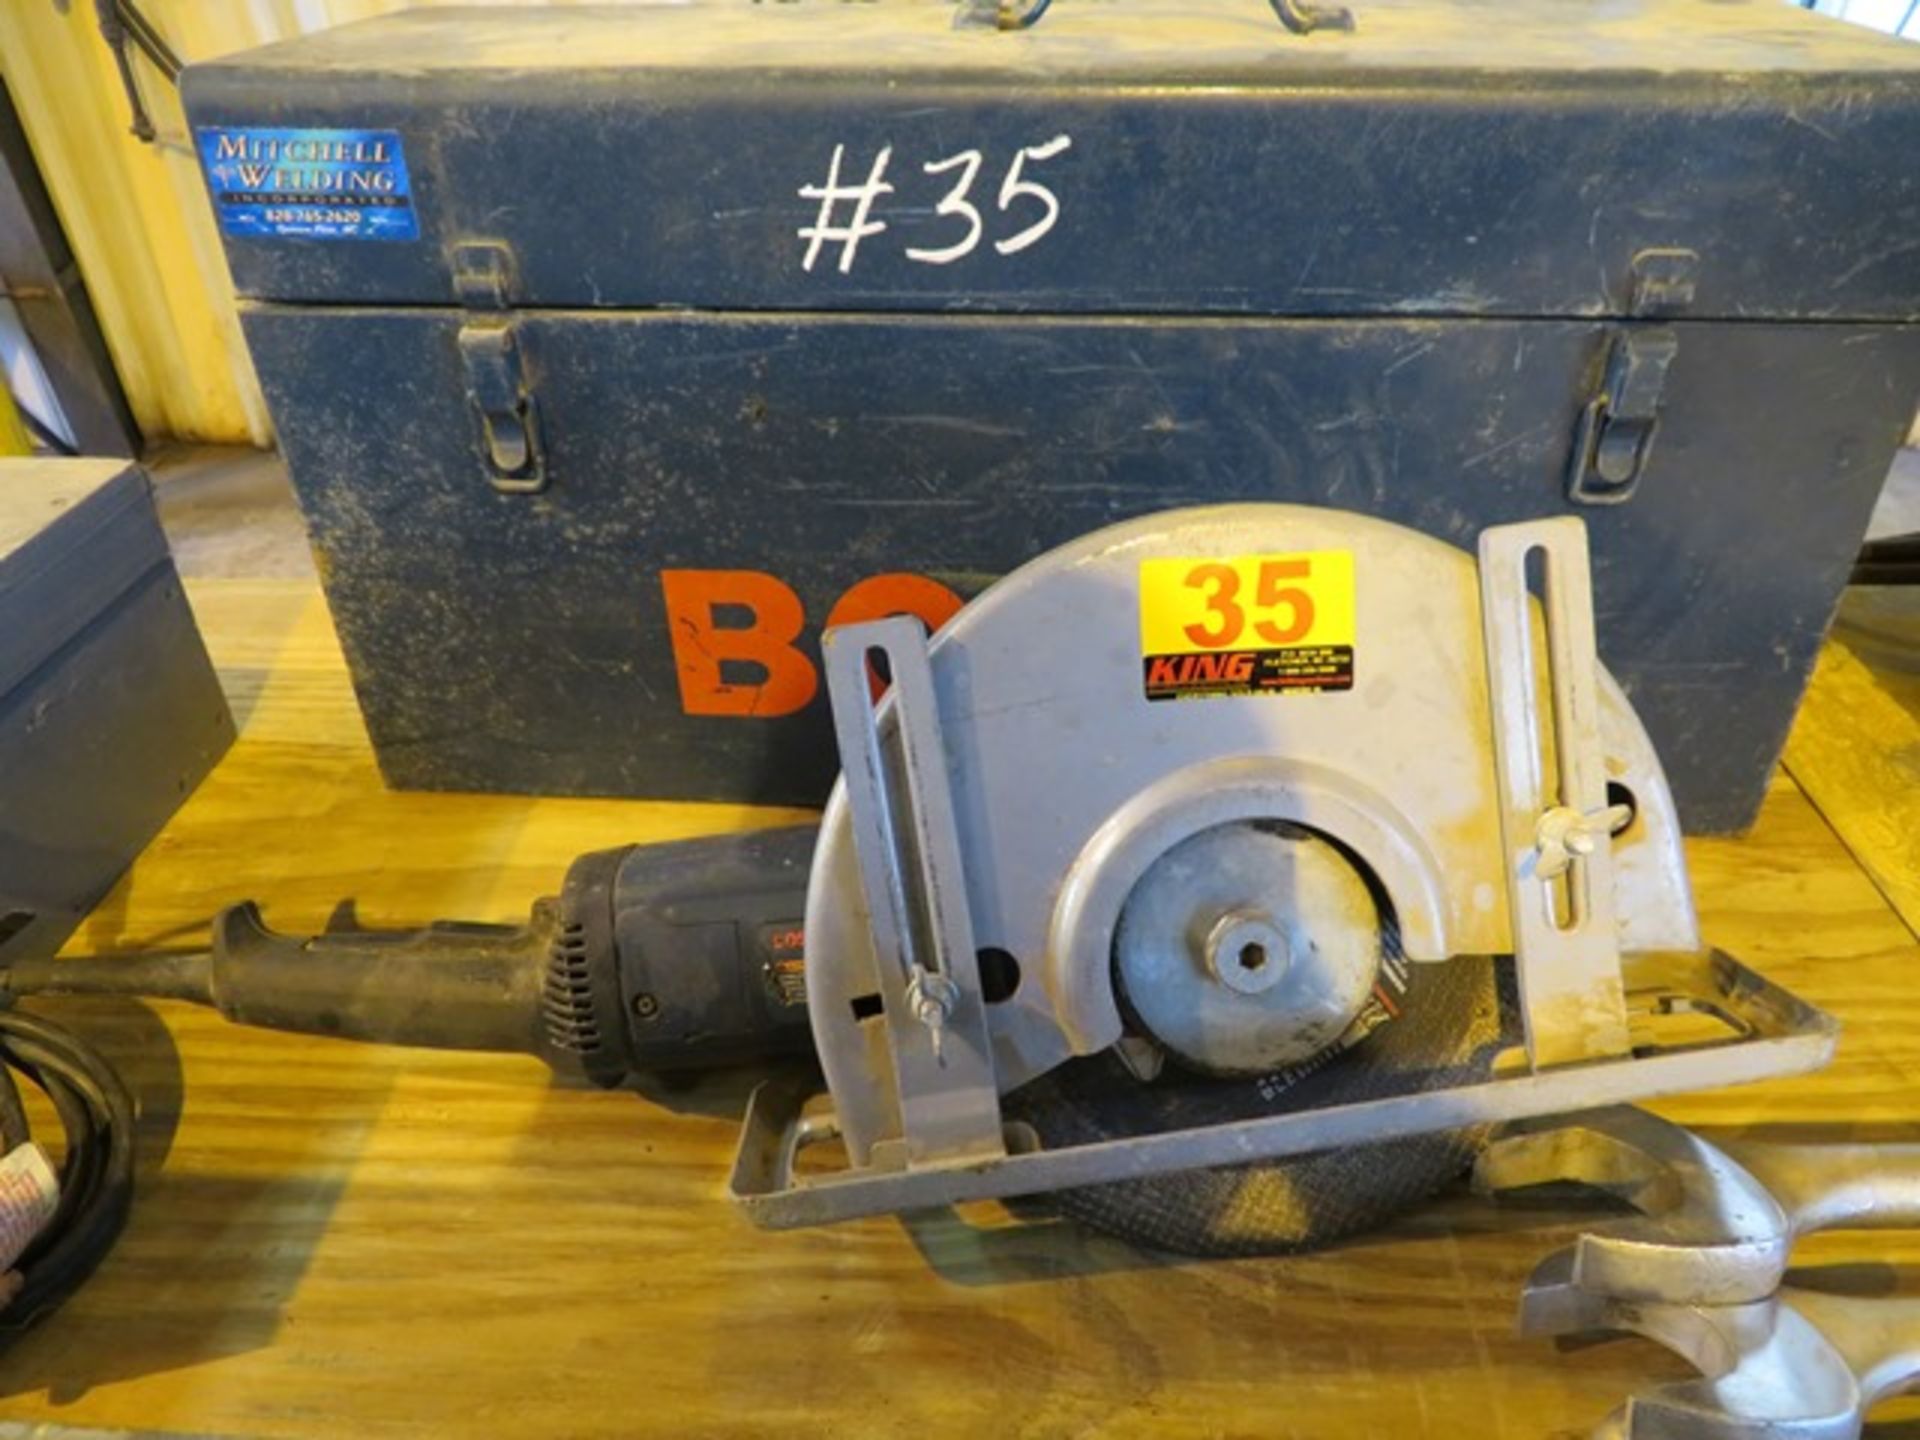 Bosch Mdl. 1364 Abrasive Cut-Off Saw